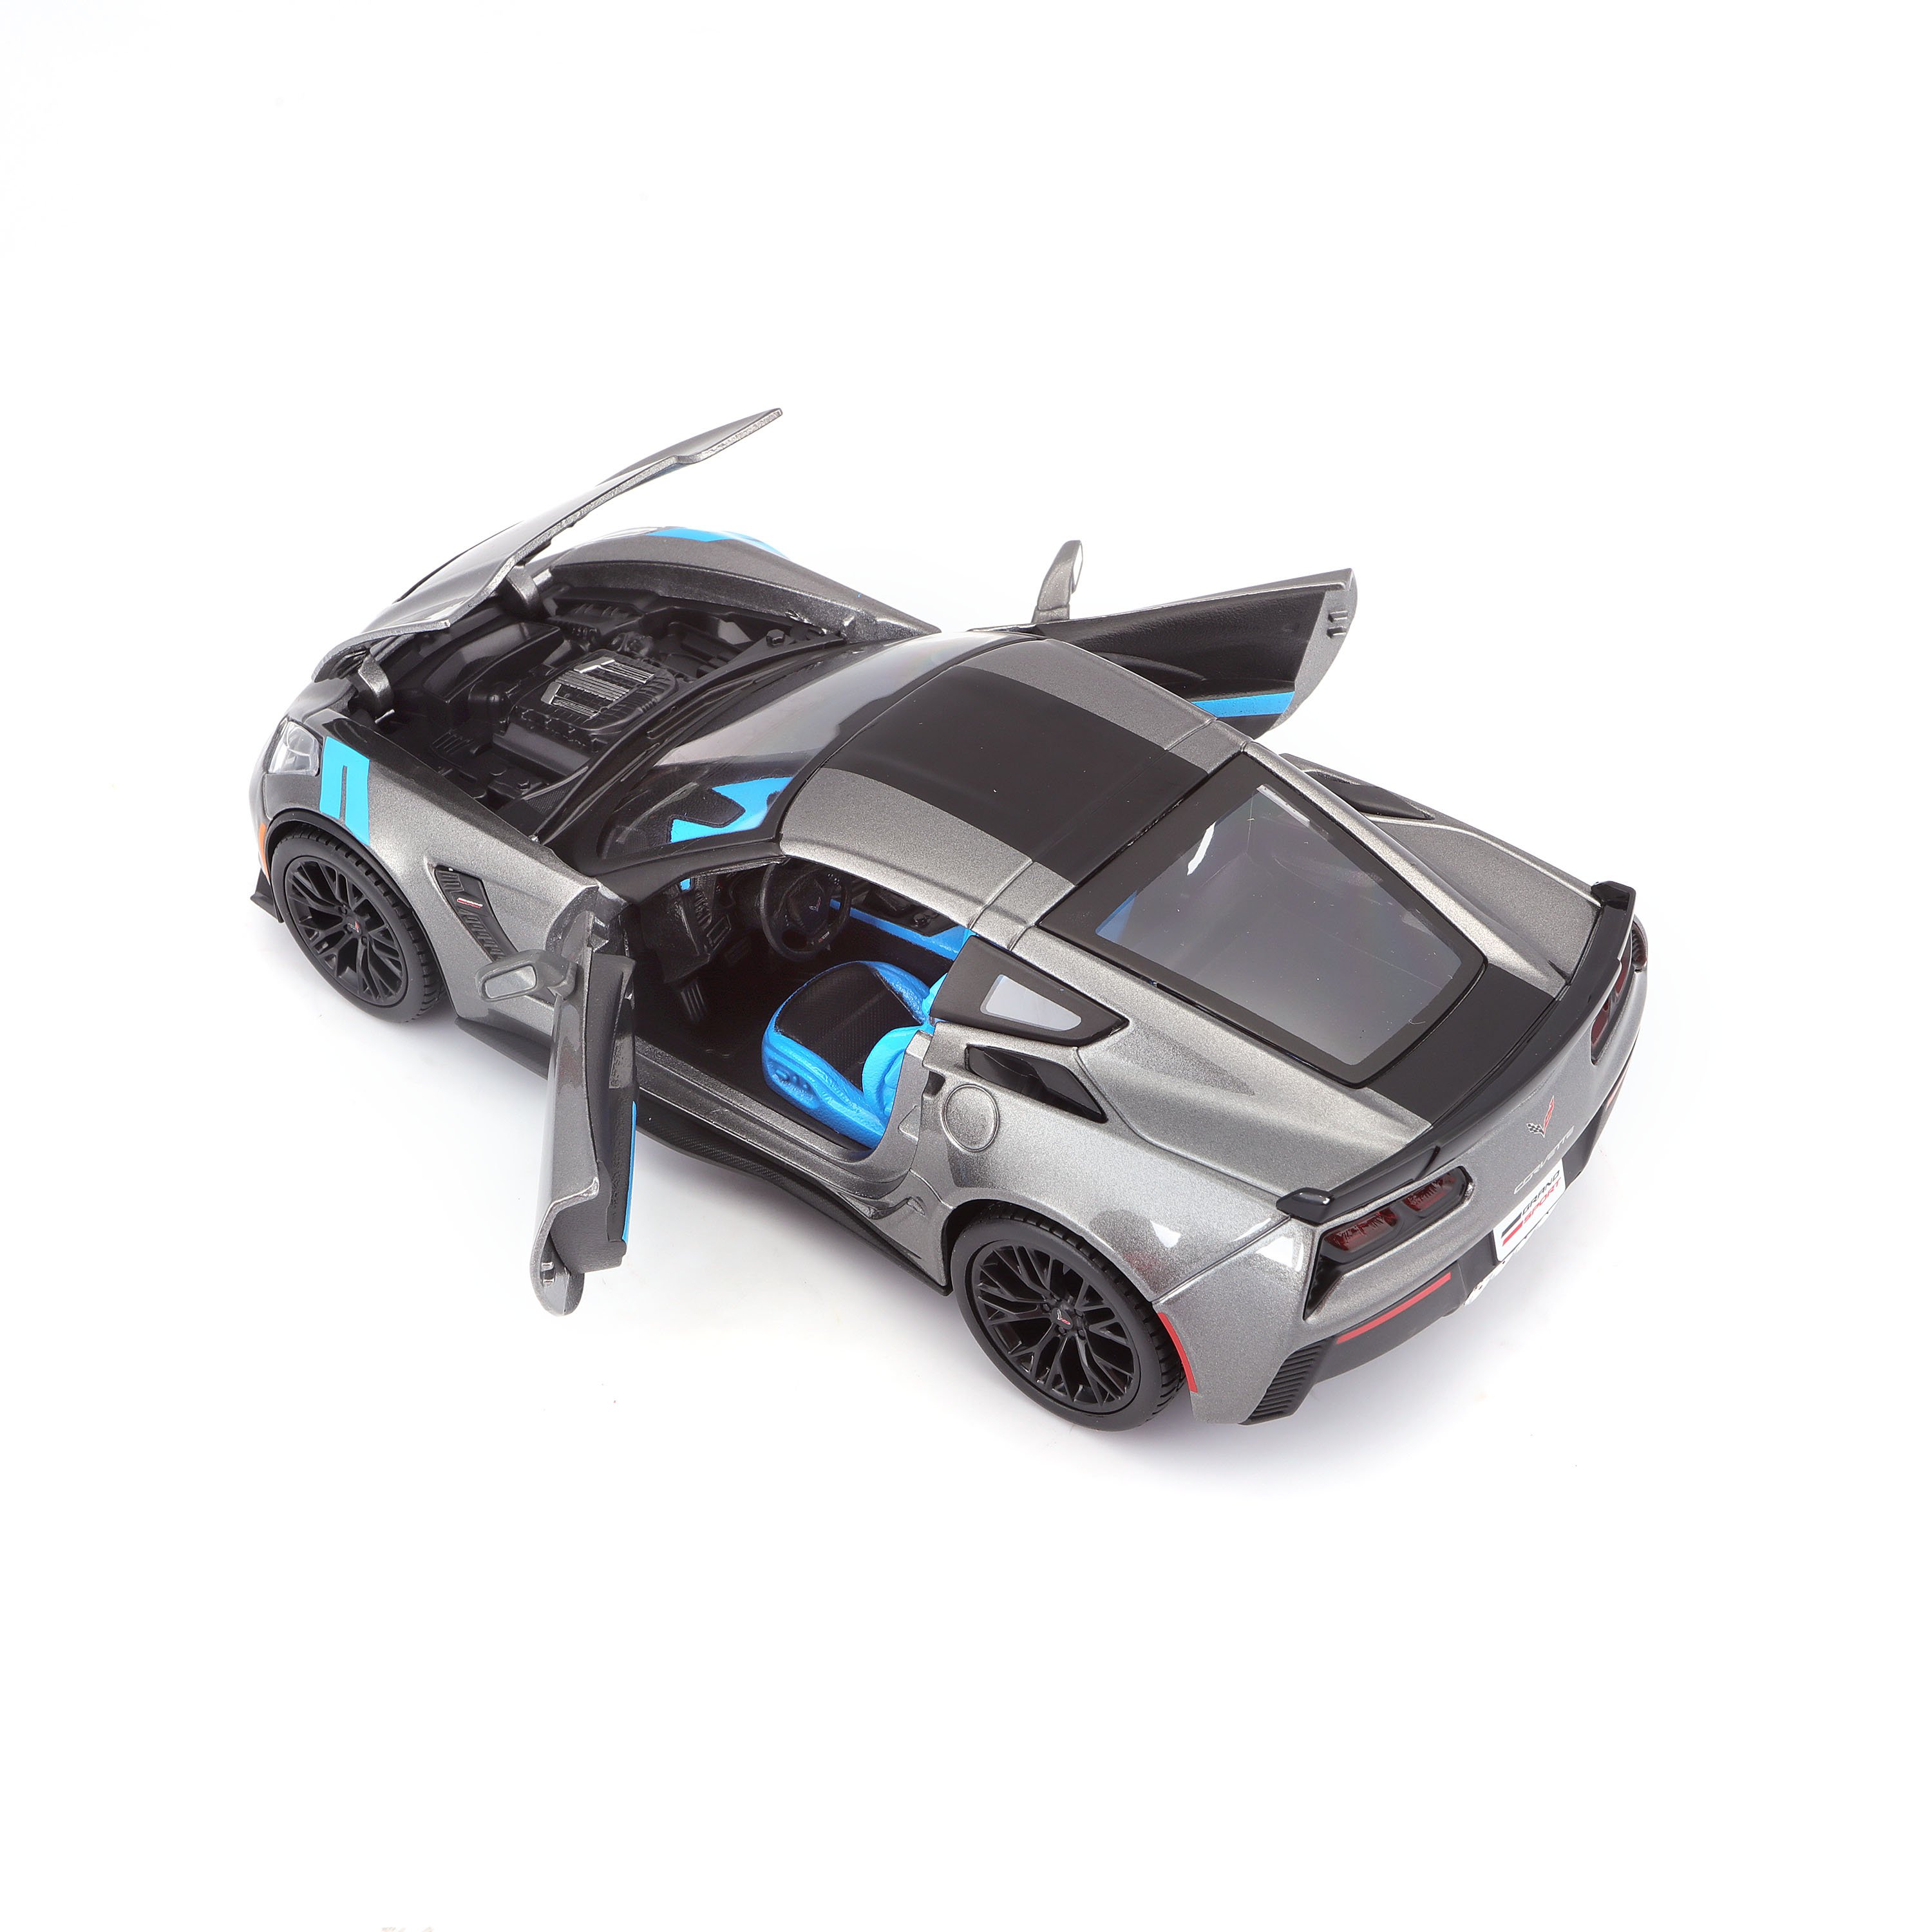 Игровая автомодель Maisto Corvette Grand Sport 2017, серый металлик, 1:24 (31516 met. grey) - фото 4